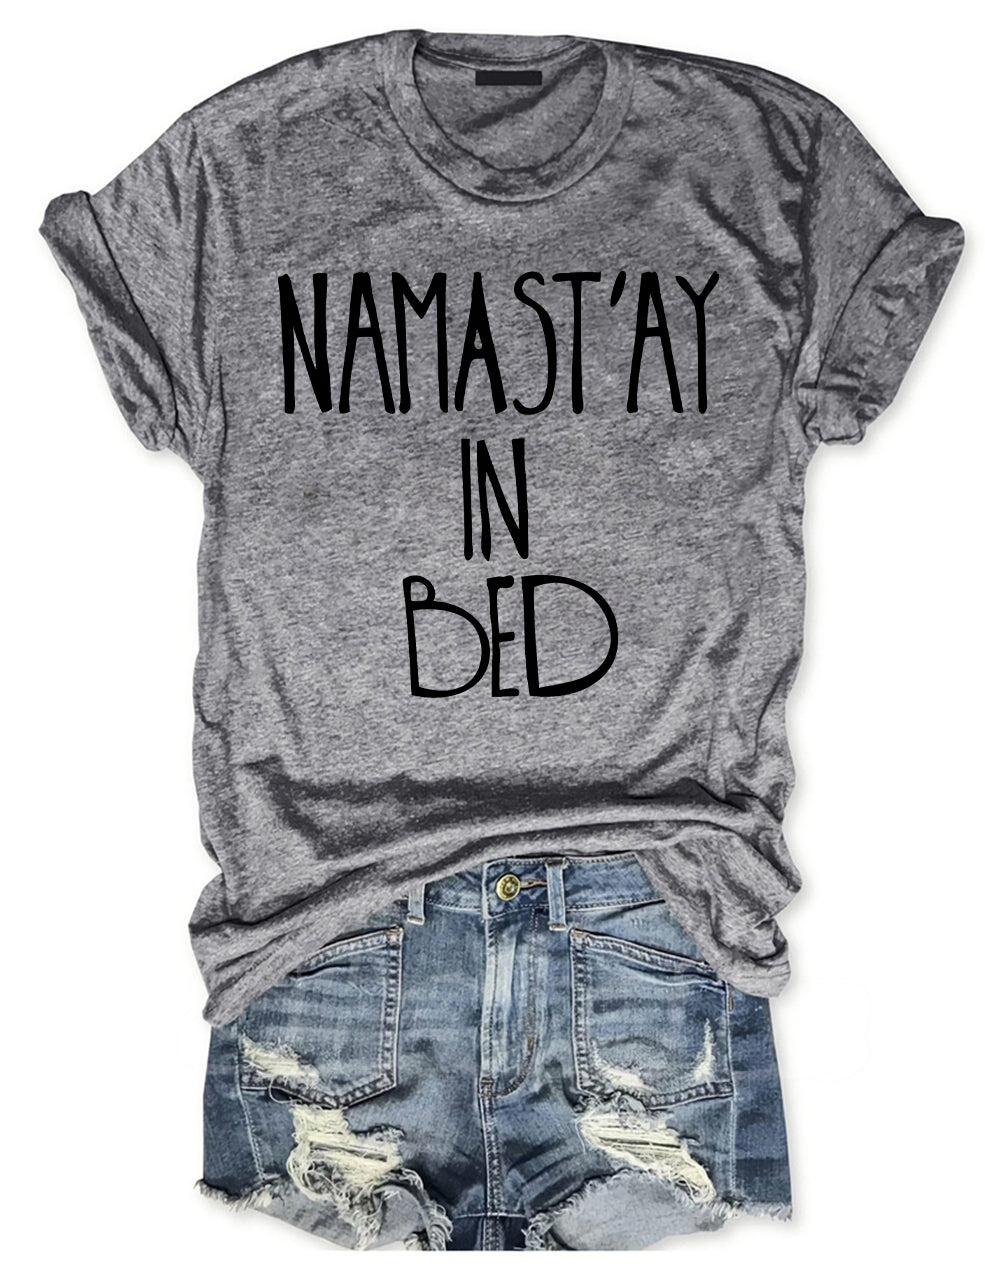 Namast'ay In Bed T-shirt